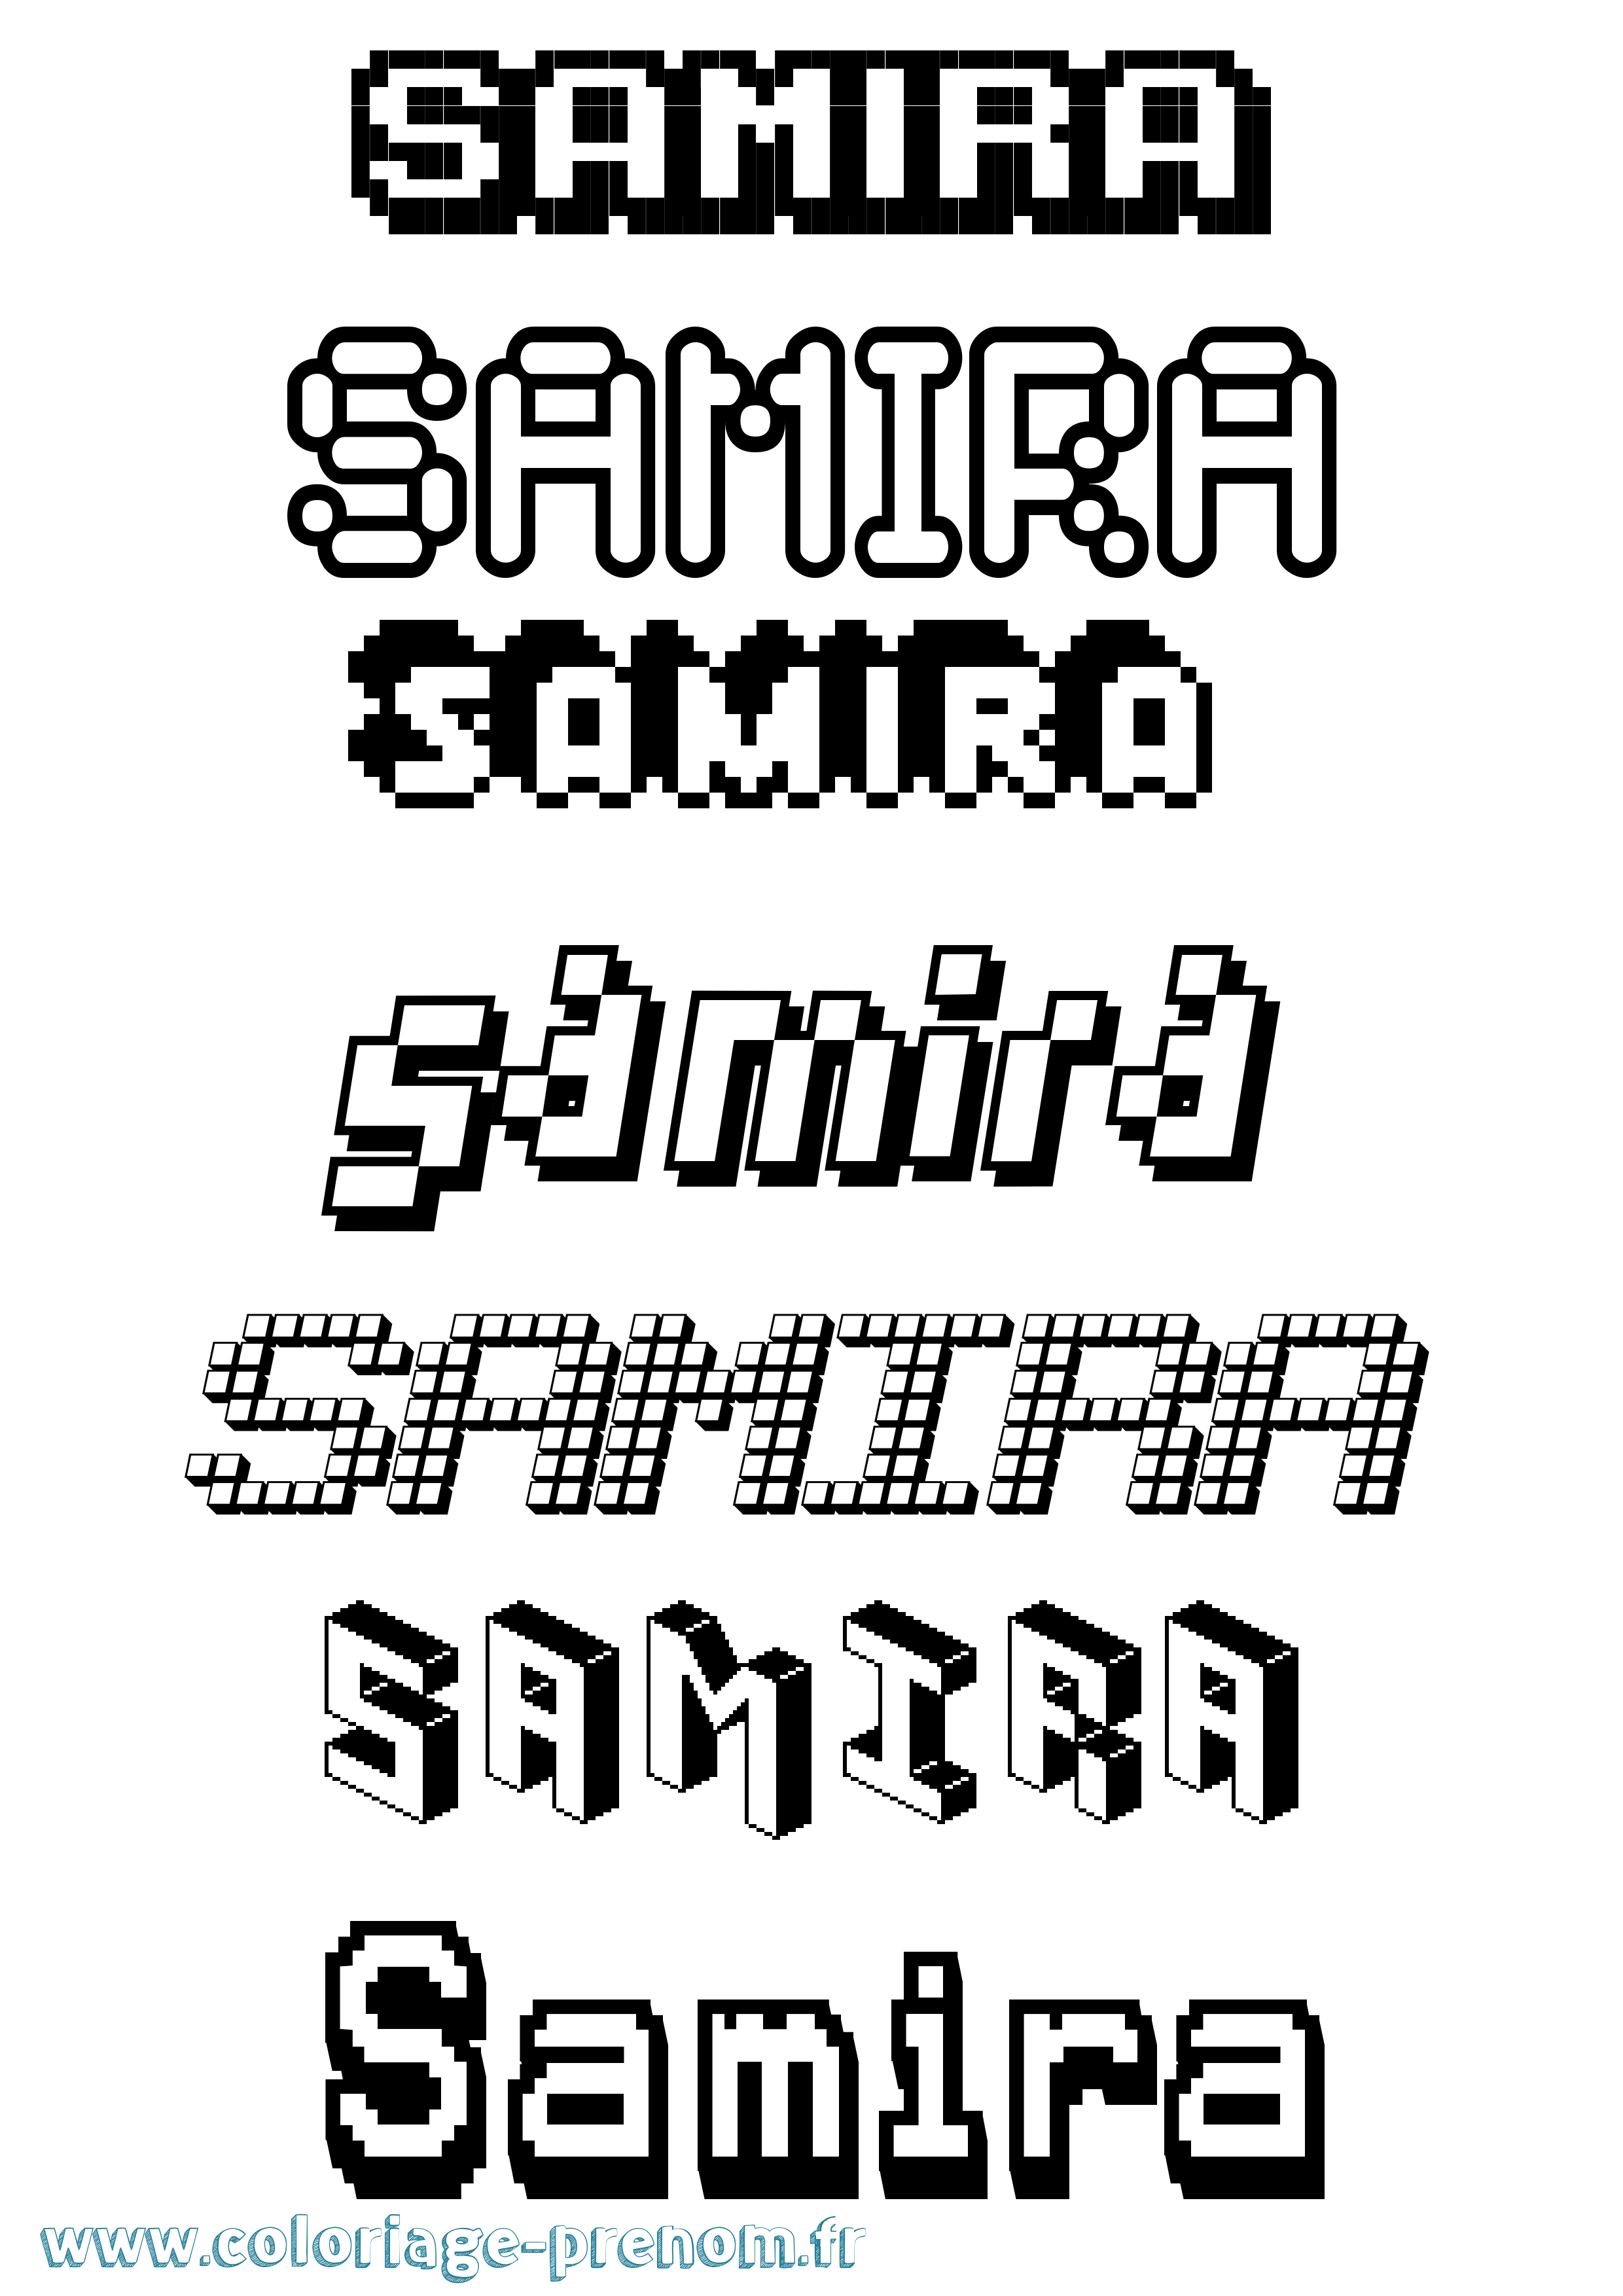 Coloriage prénom Samira